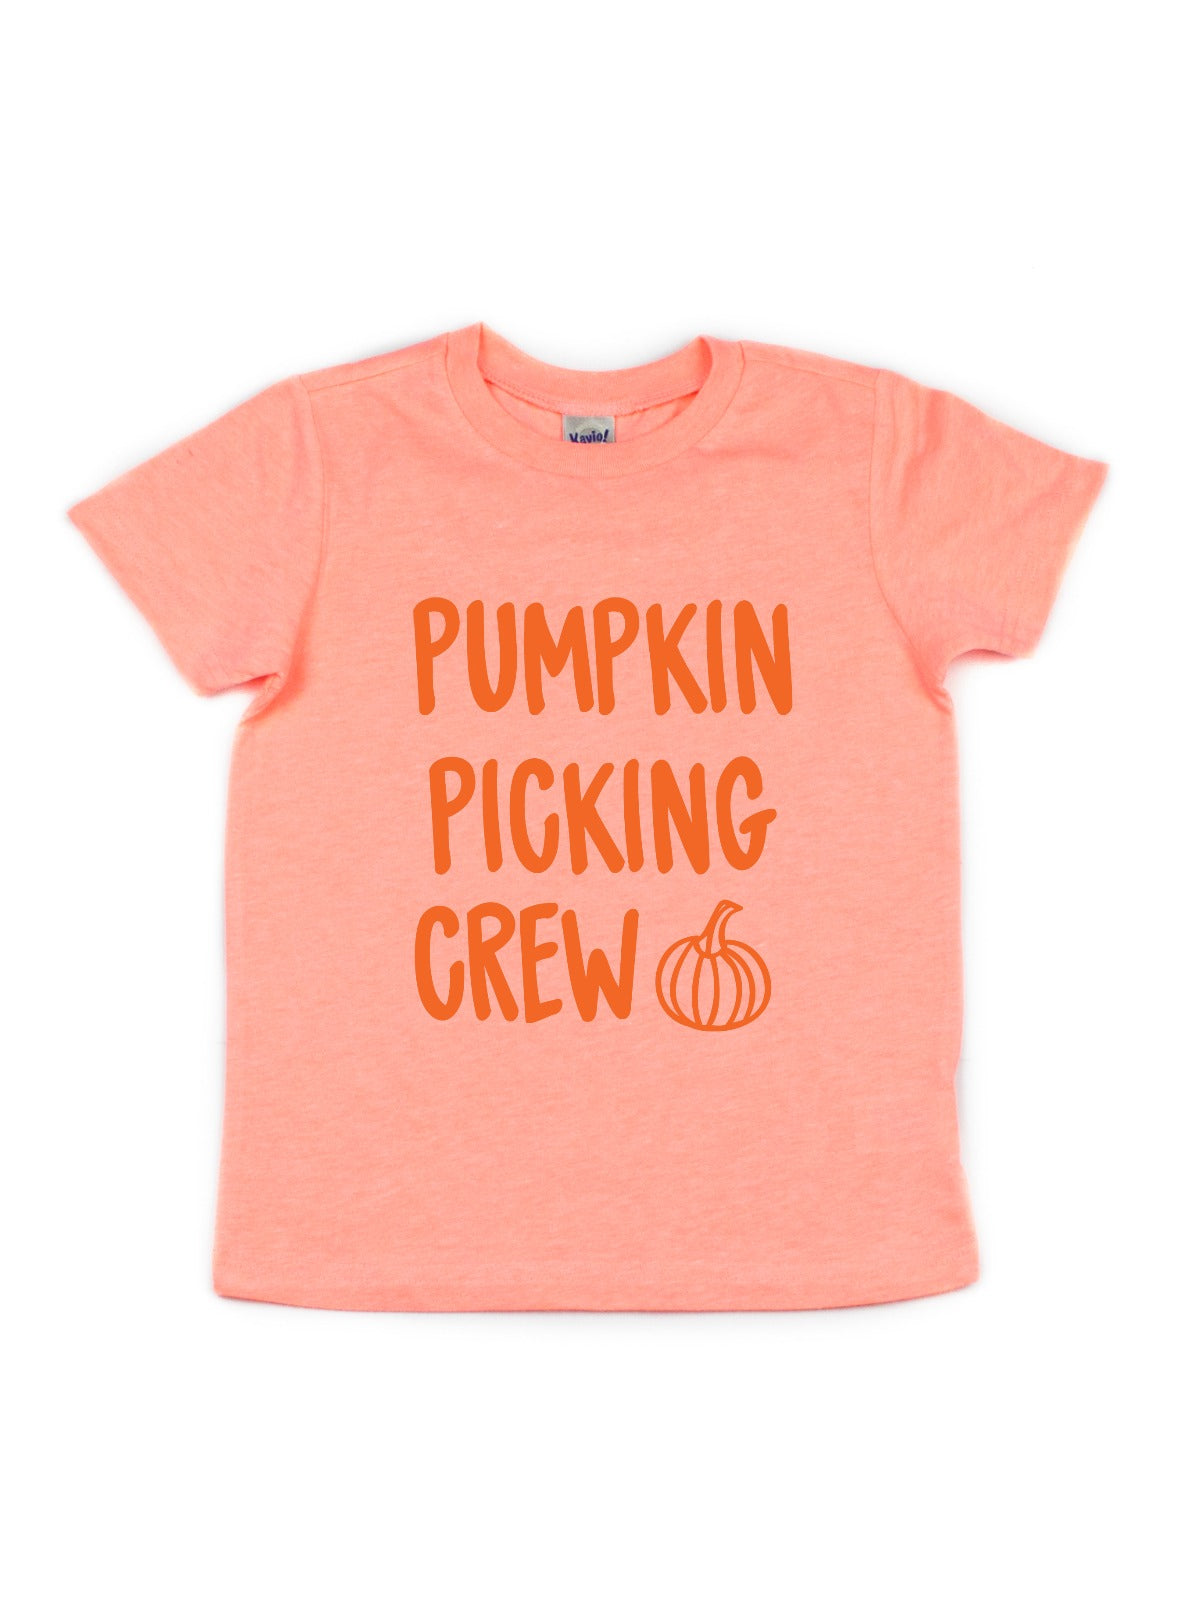 flamingo orange girls pumpkin picking shirt